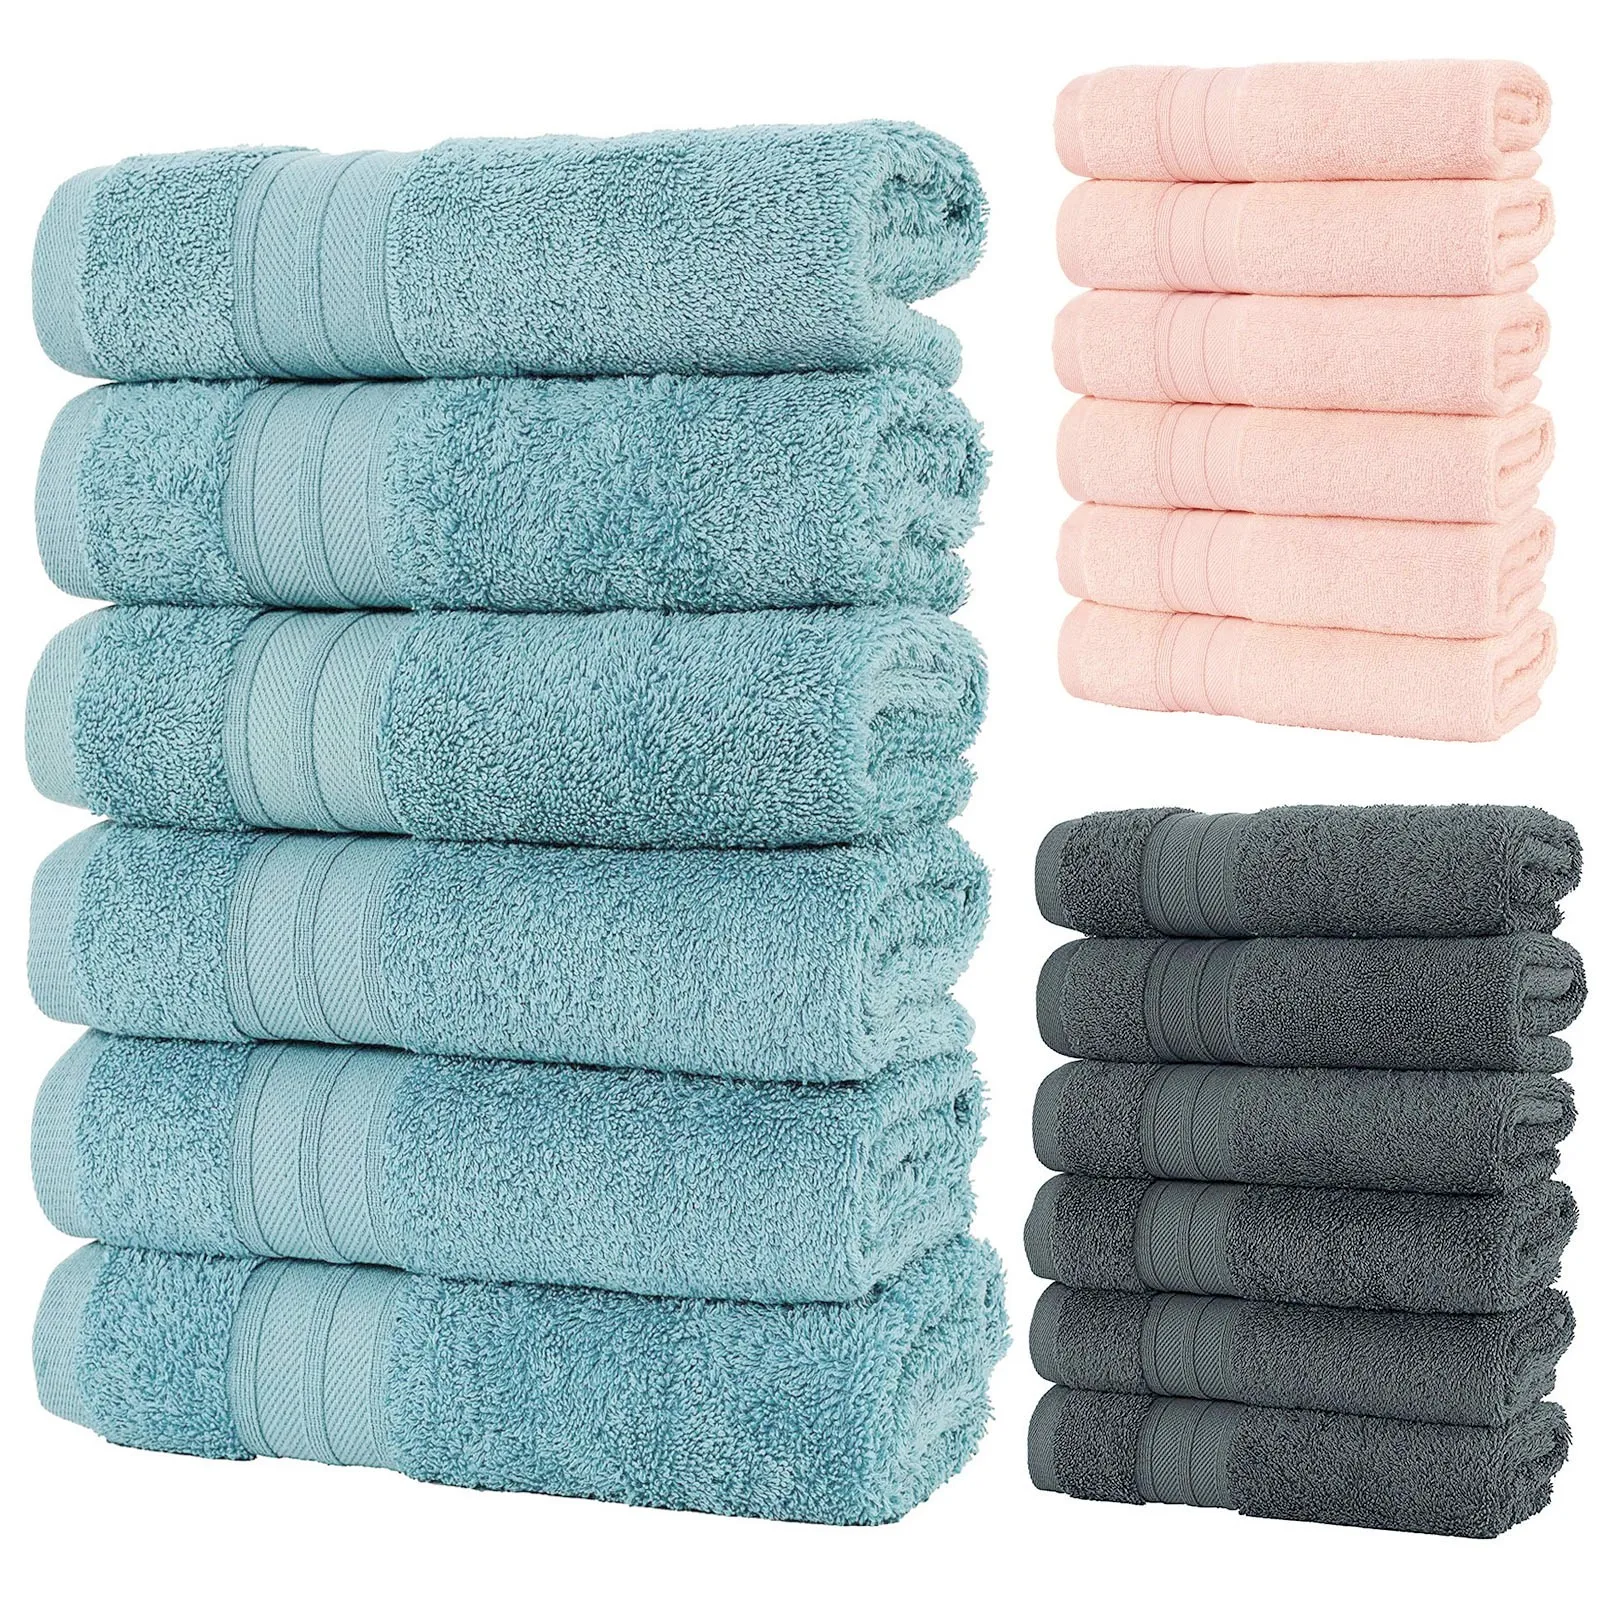 Absorbent Hand Towels Comfortable Bath Towels 35x75cm Bathro